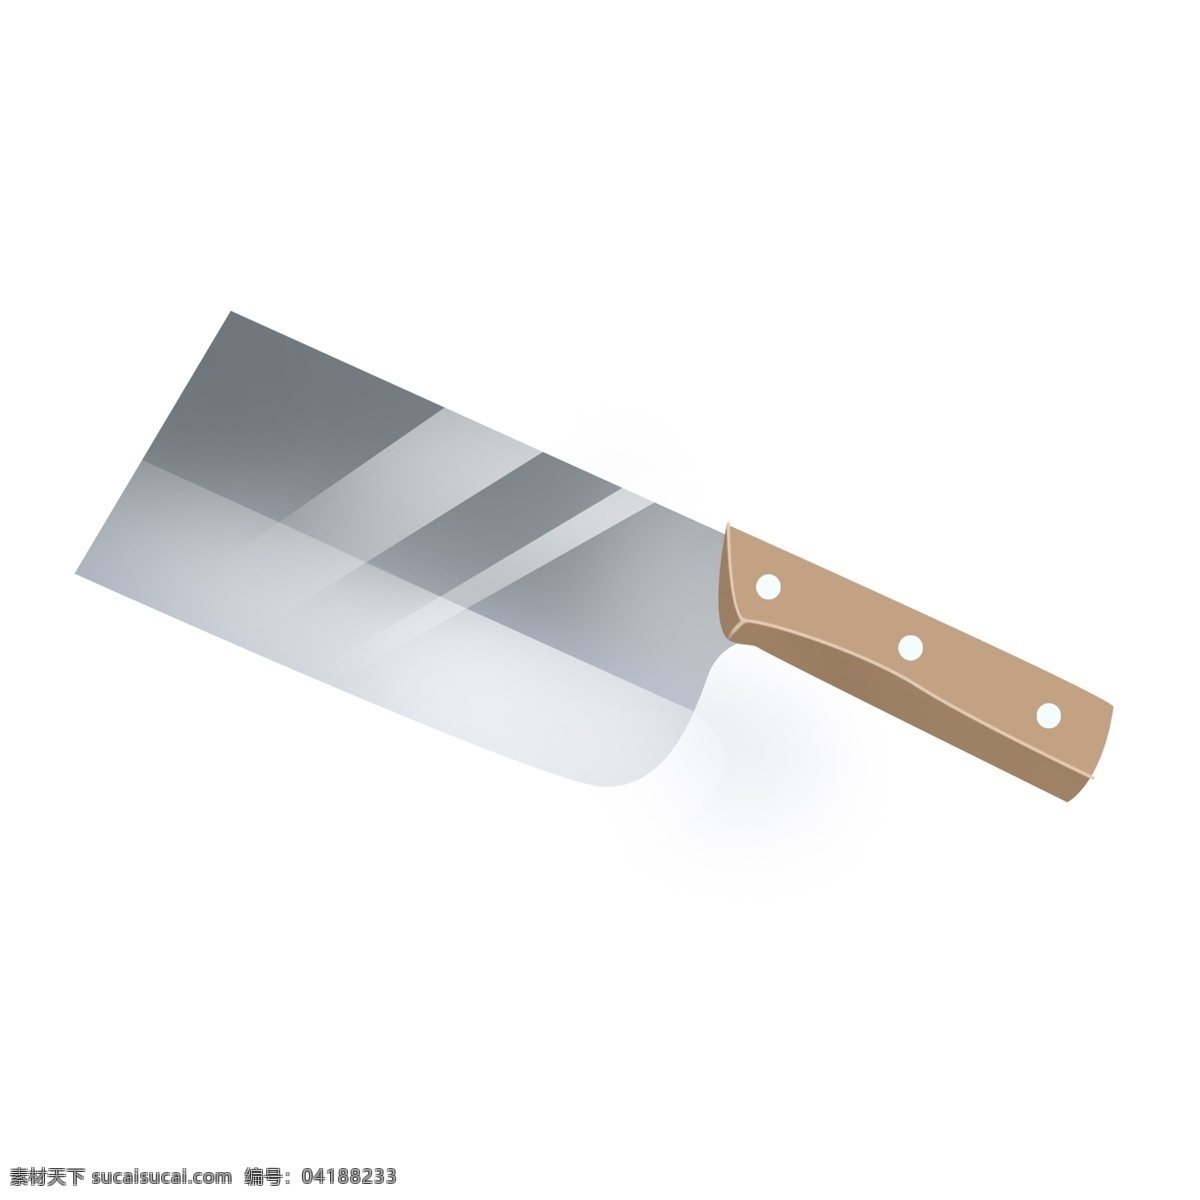 卡通 家用 菜刀 透明 底 切菜 厨具 烹饪煮菜用品 厨房用具 厨房用品 插画插图 木质把手 银色 灰色 锋利的刀